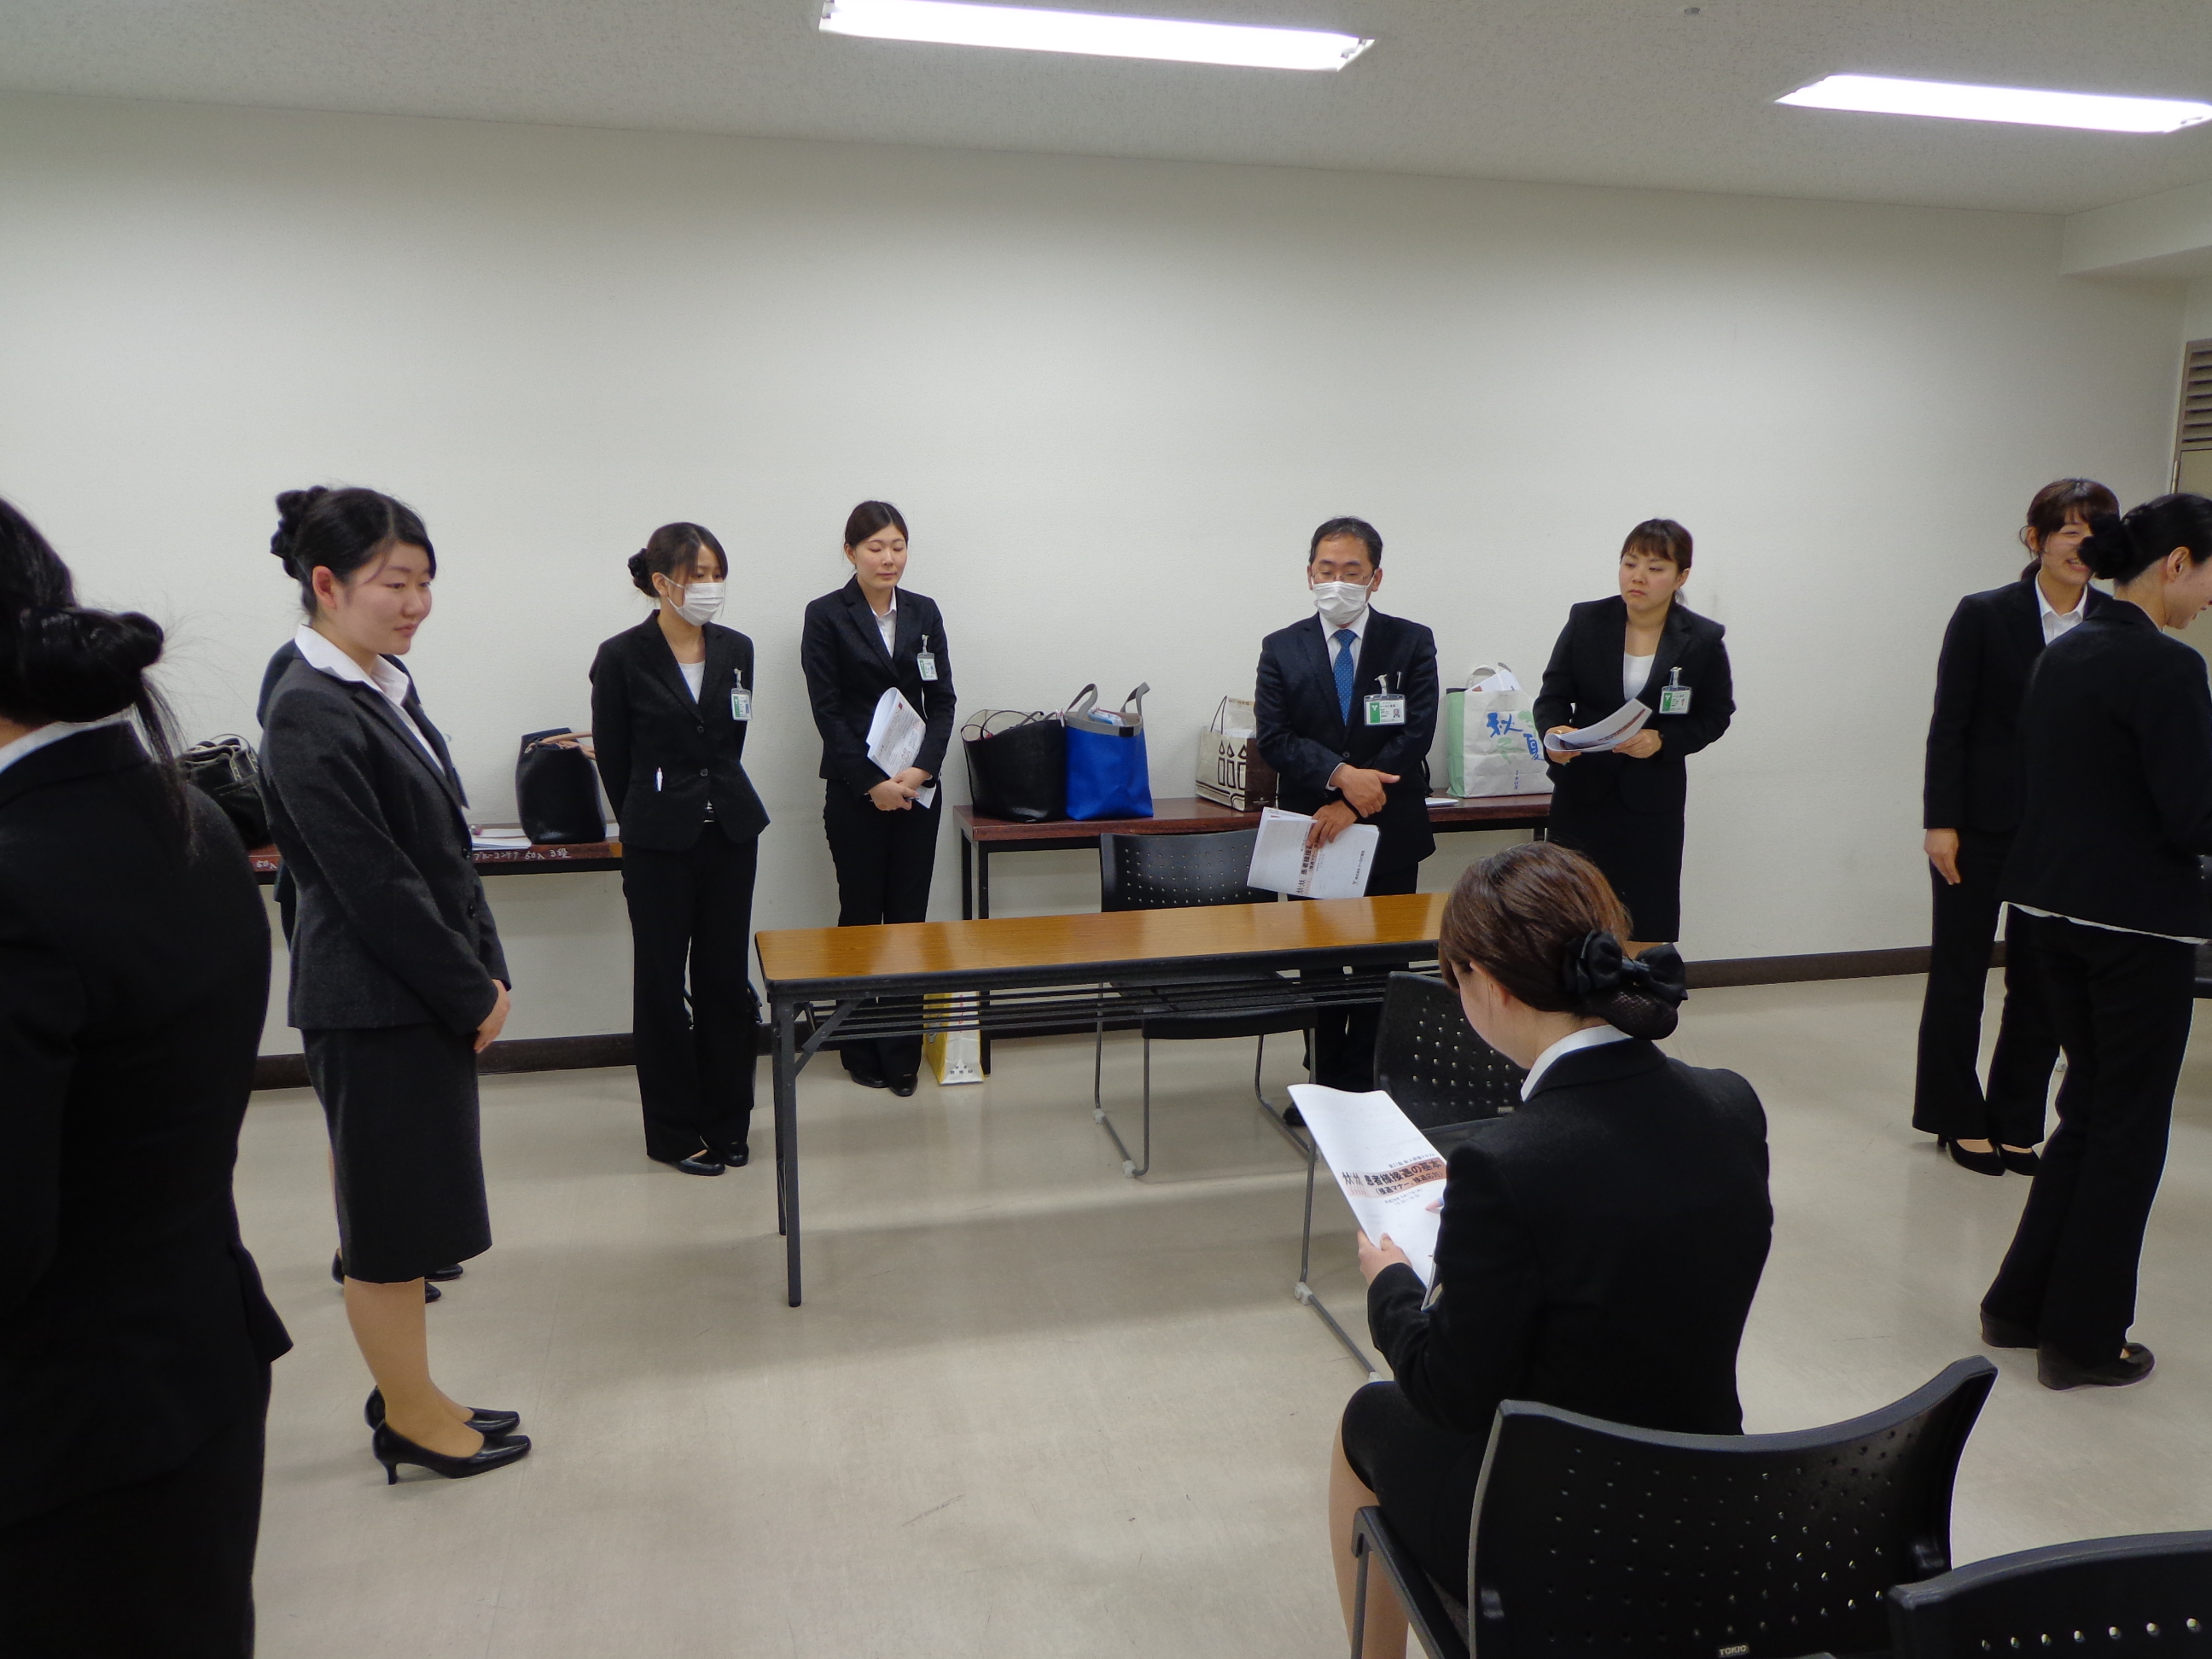 「新人マナー研修」を開催しました。 愛知名古屋、岐阜の調剤薬局は株式会社トーカイ薬局